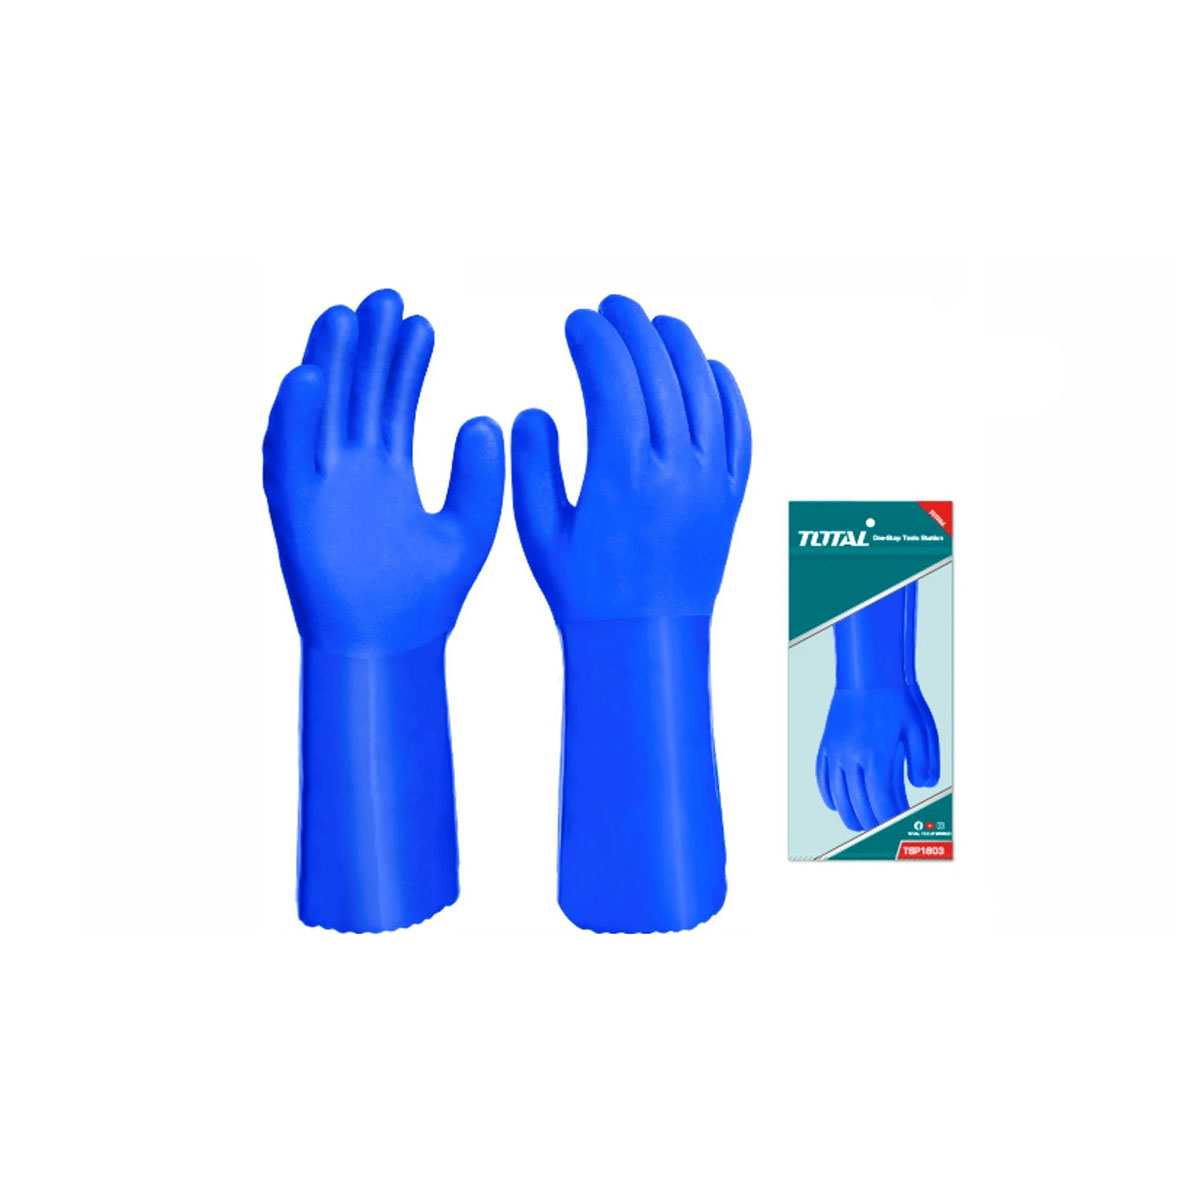 Hình ảnh 1 của mặt hàng Găng tay nhựa PVC cỡ L Total TSP1803